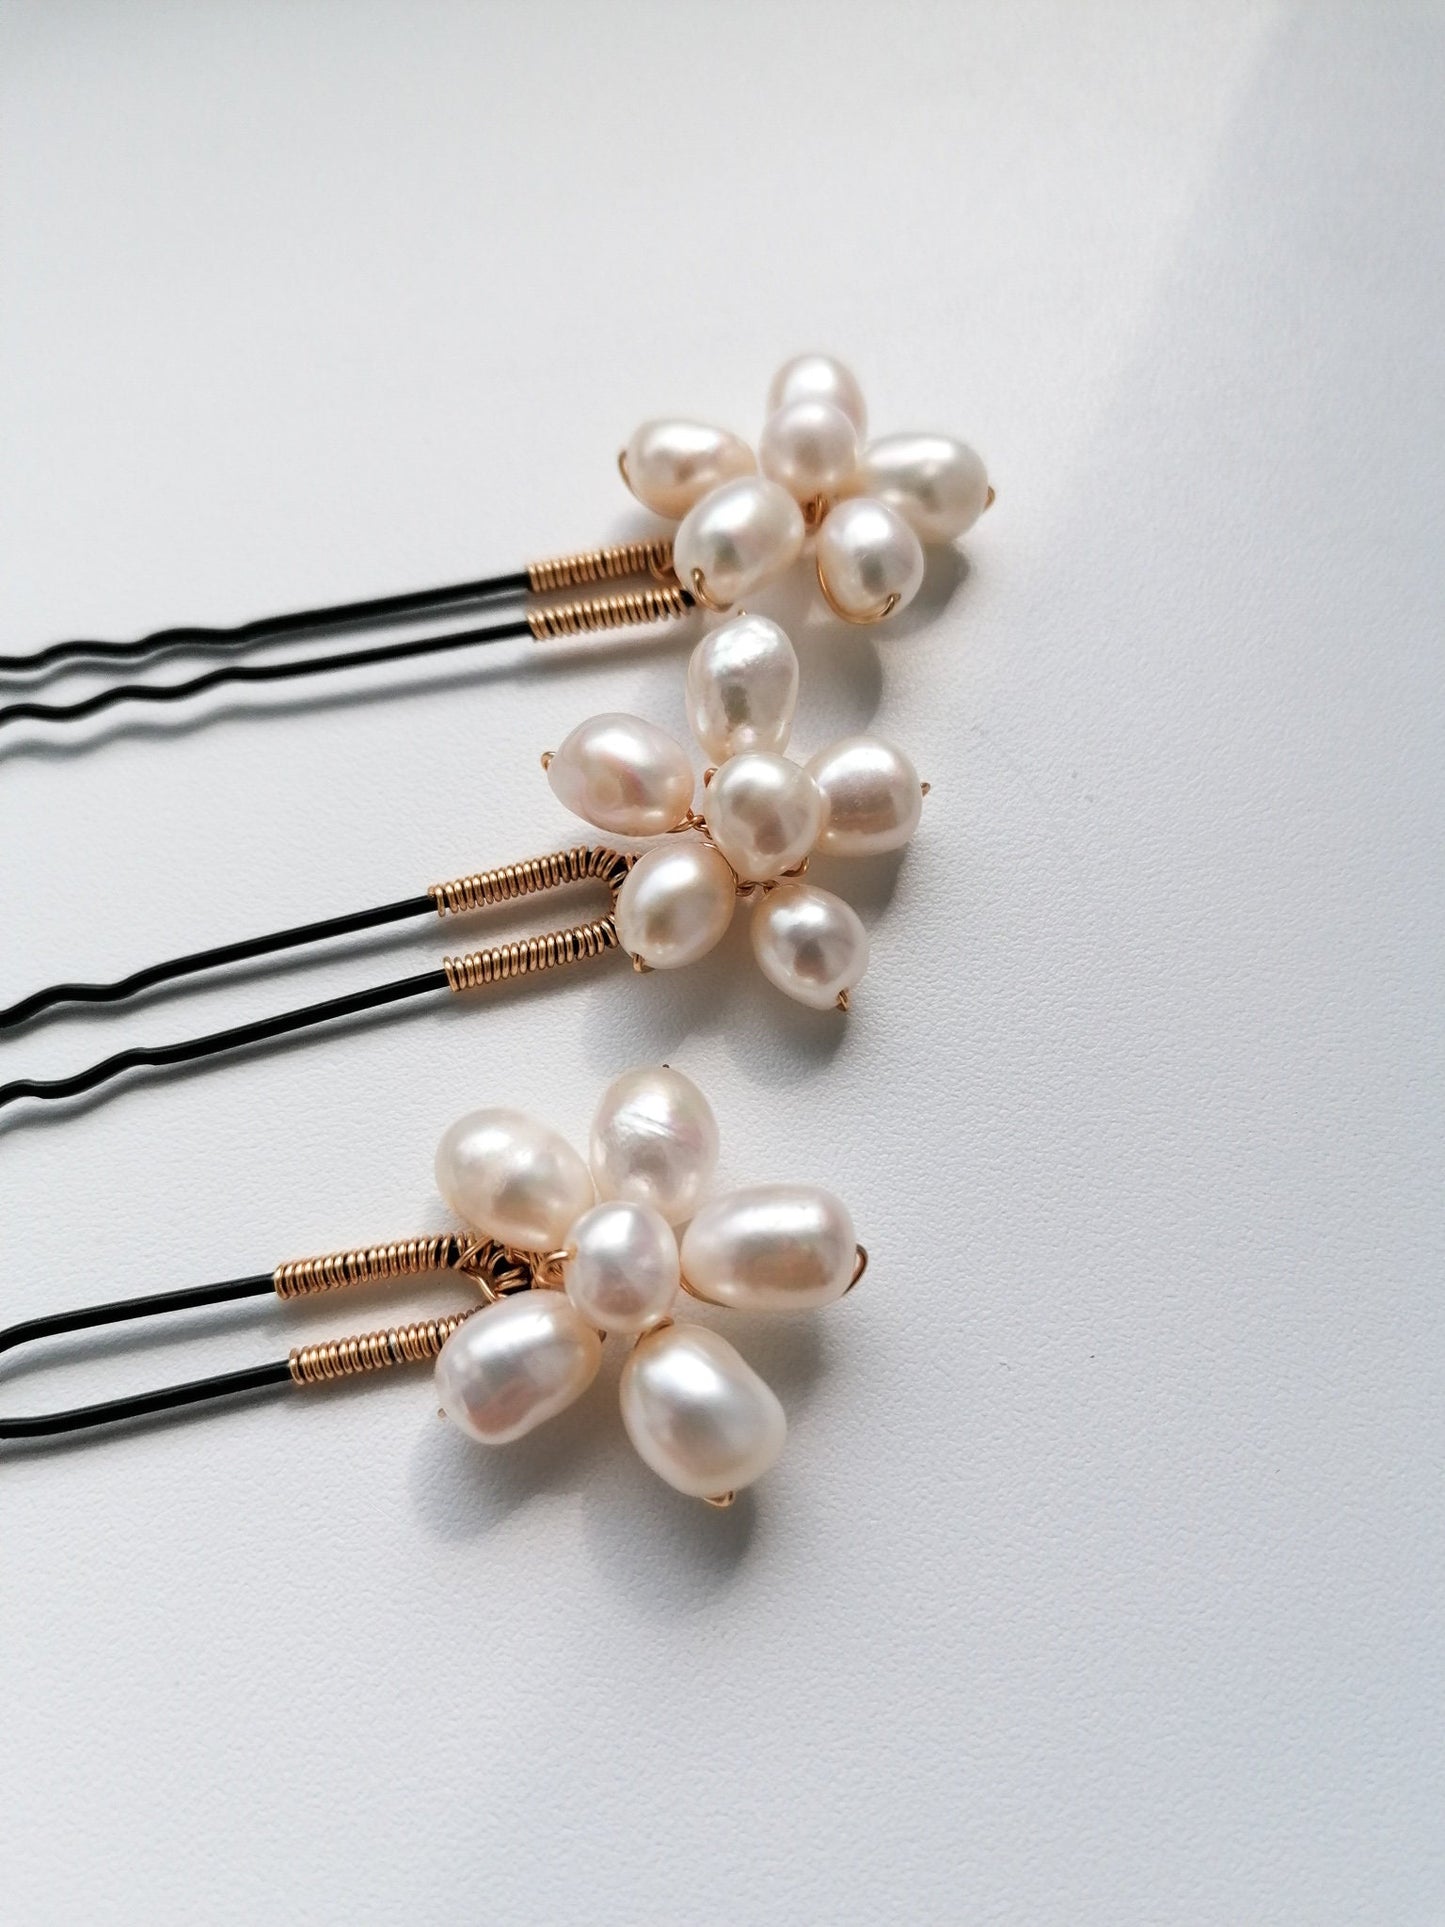 Floral pearl hair pins